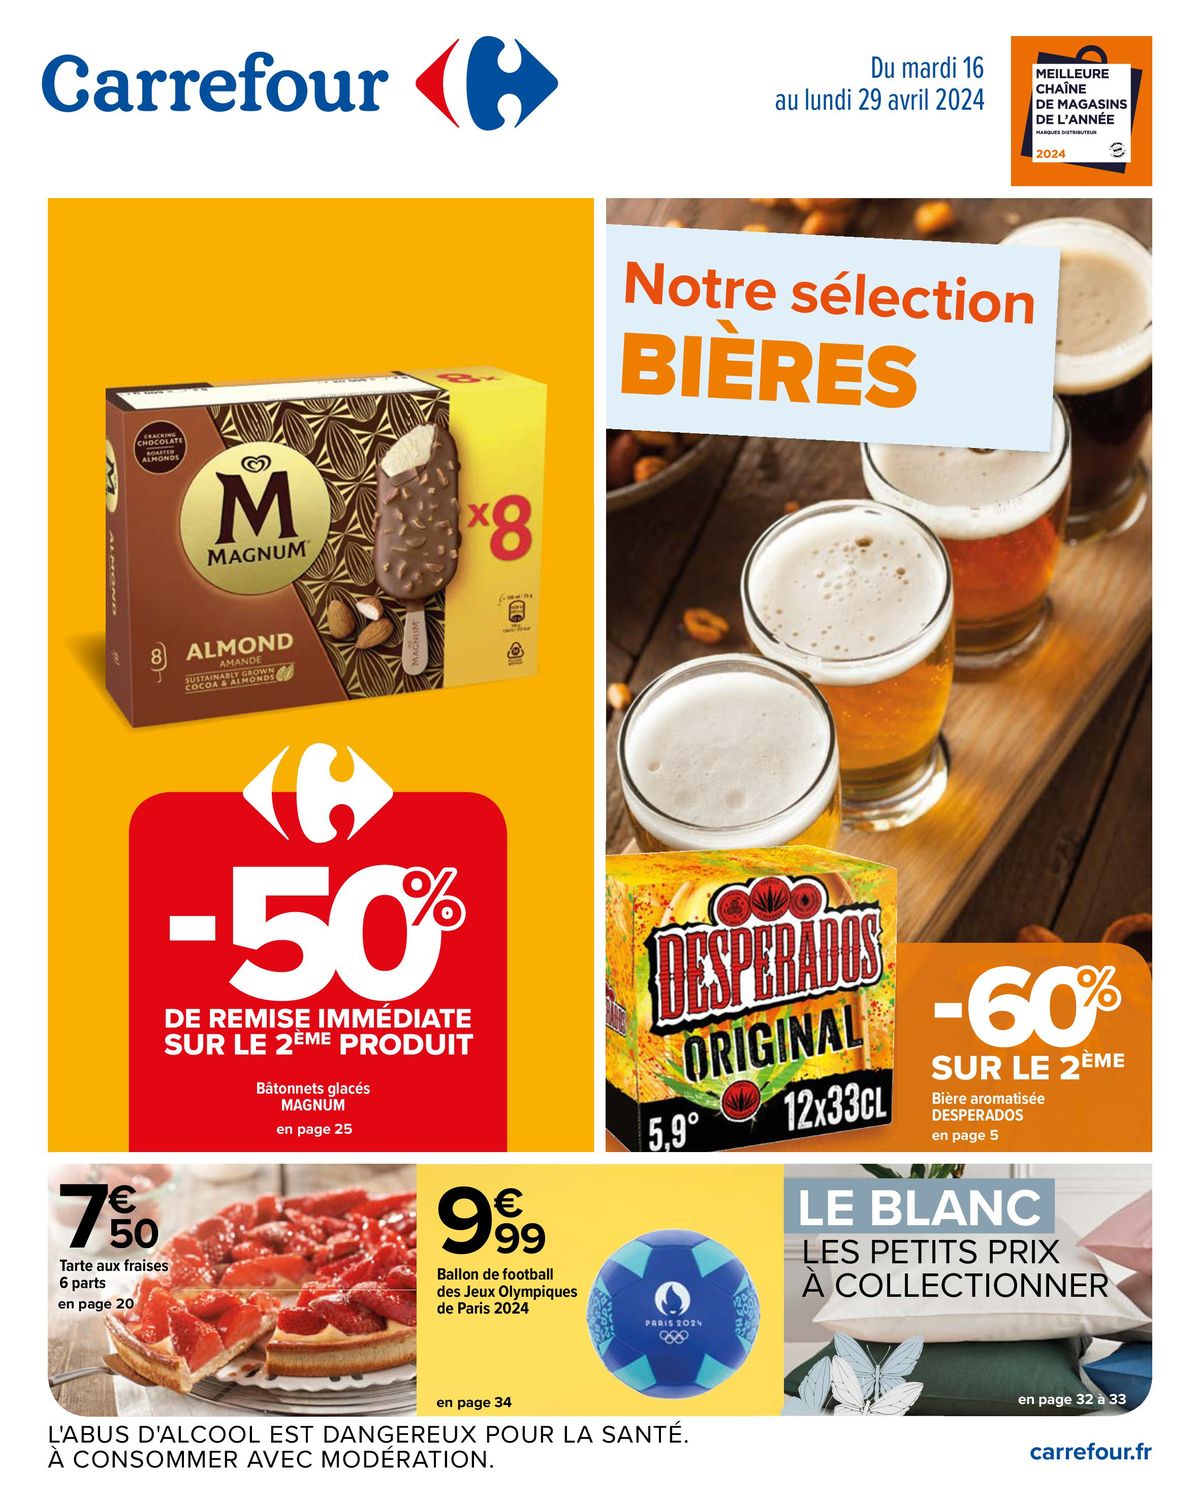 Catalogue Notre sélection Bières, page 00001